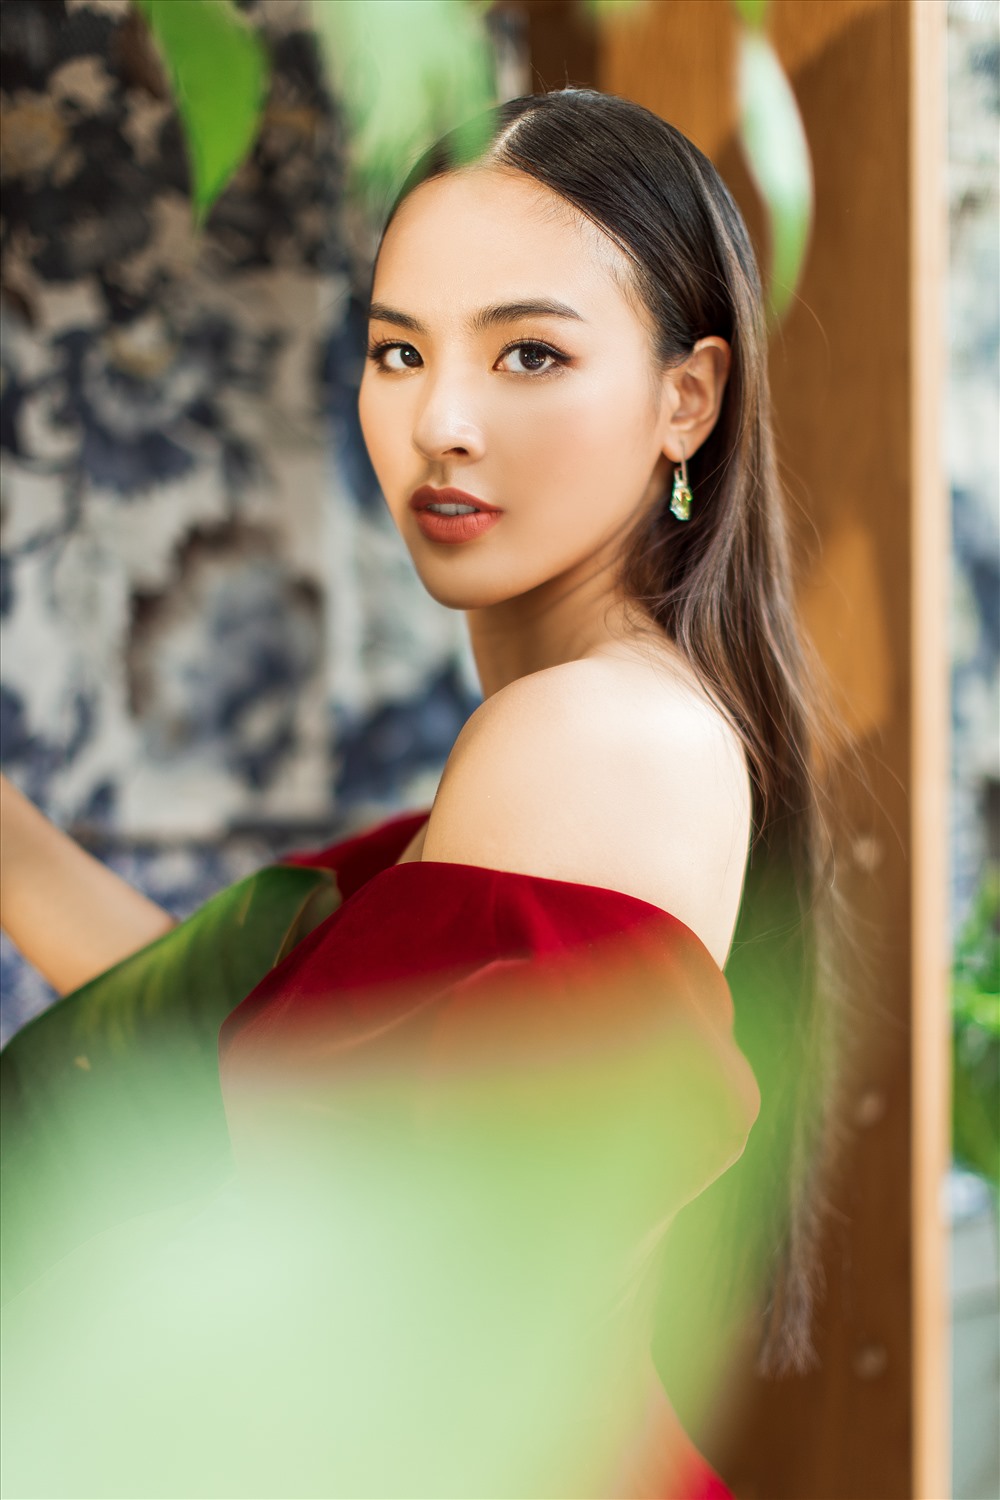 Quỳnh Nga sẽ vào TP. HCM tham dự cuộc thi “Miss Charm 2020” vào đầu tháng 3 tới đây.